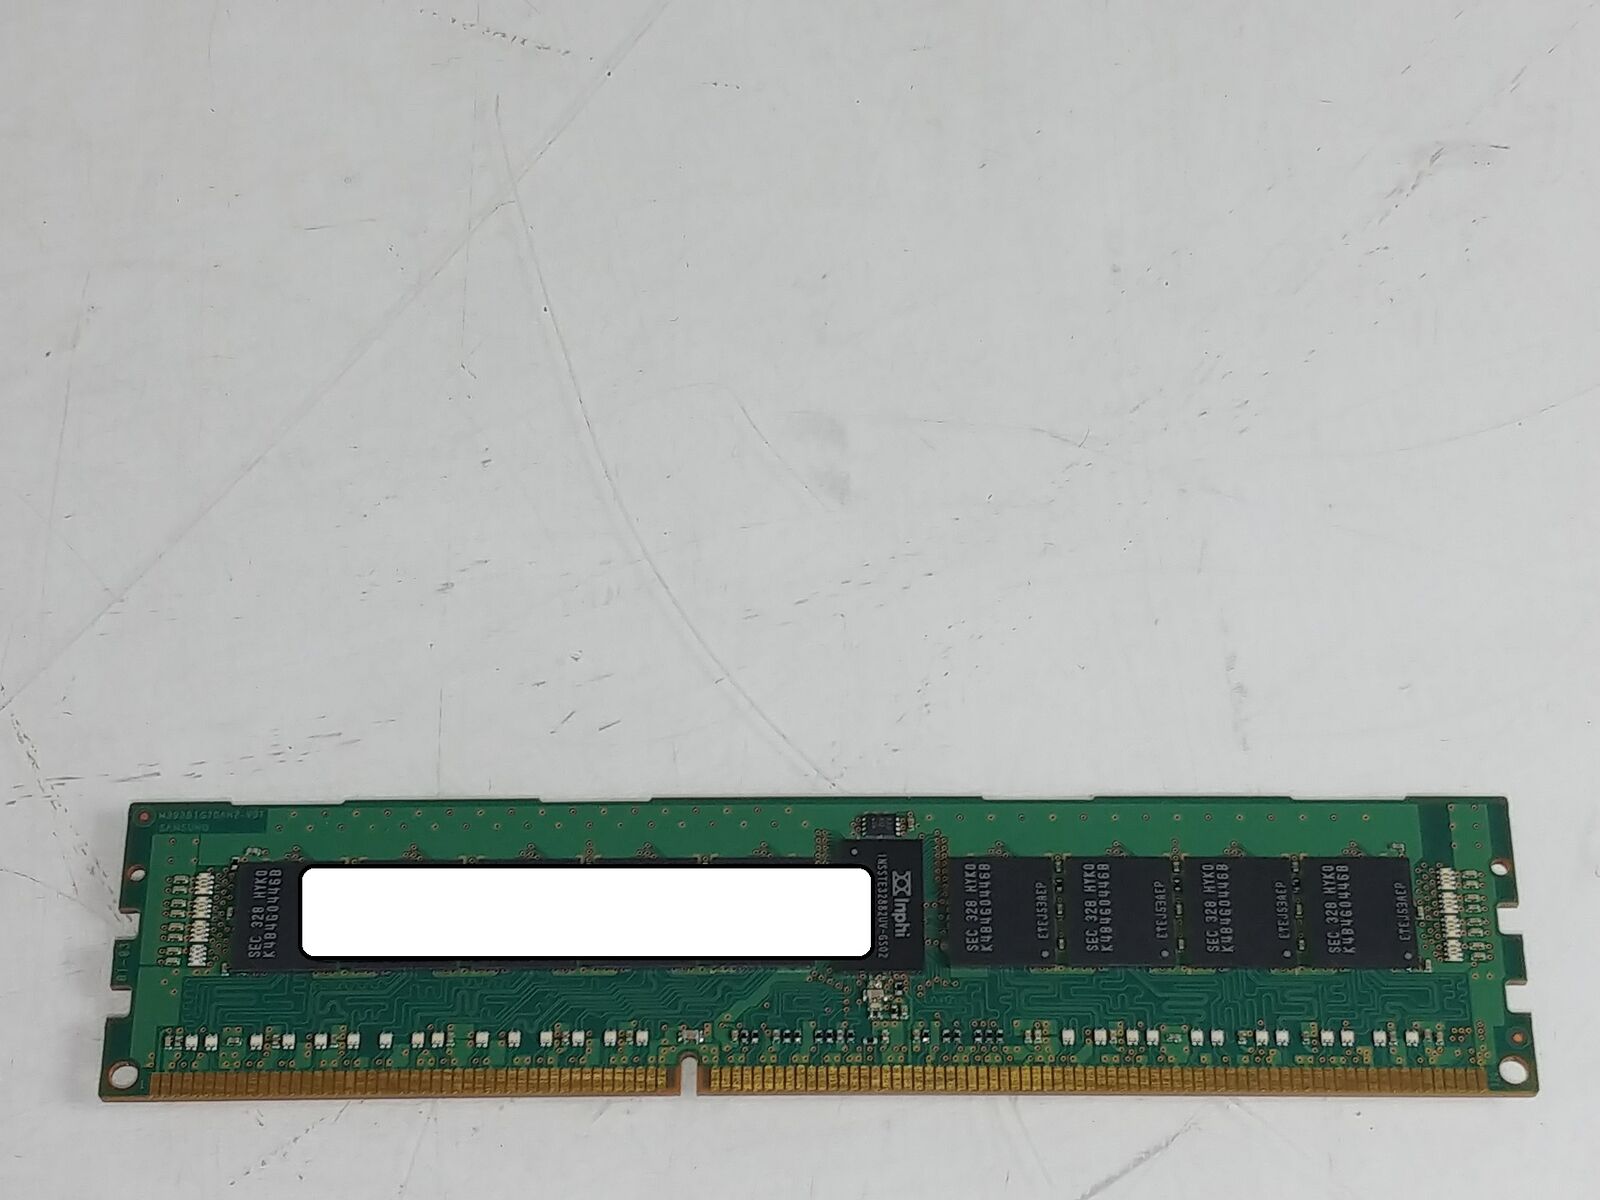 Lot of 10 8 GB DDR3L-1600 PC3L-12800R 1Rx4 DDR3L SDRAM Server Memory